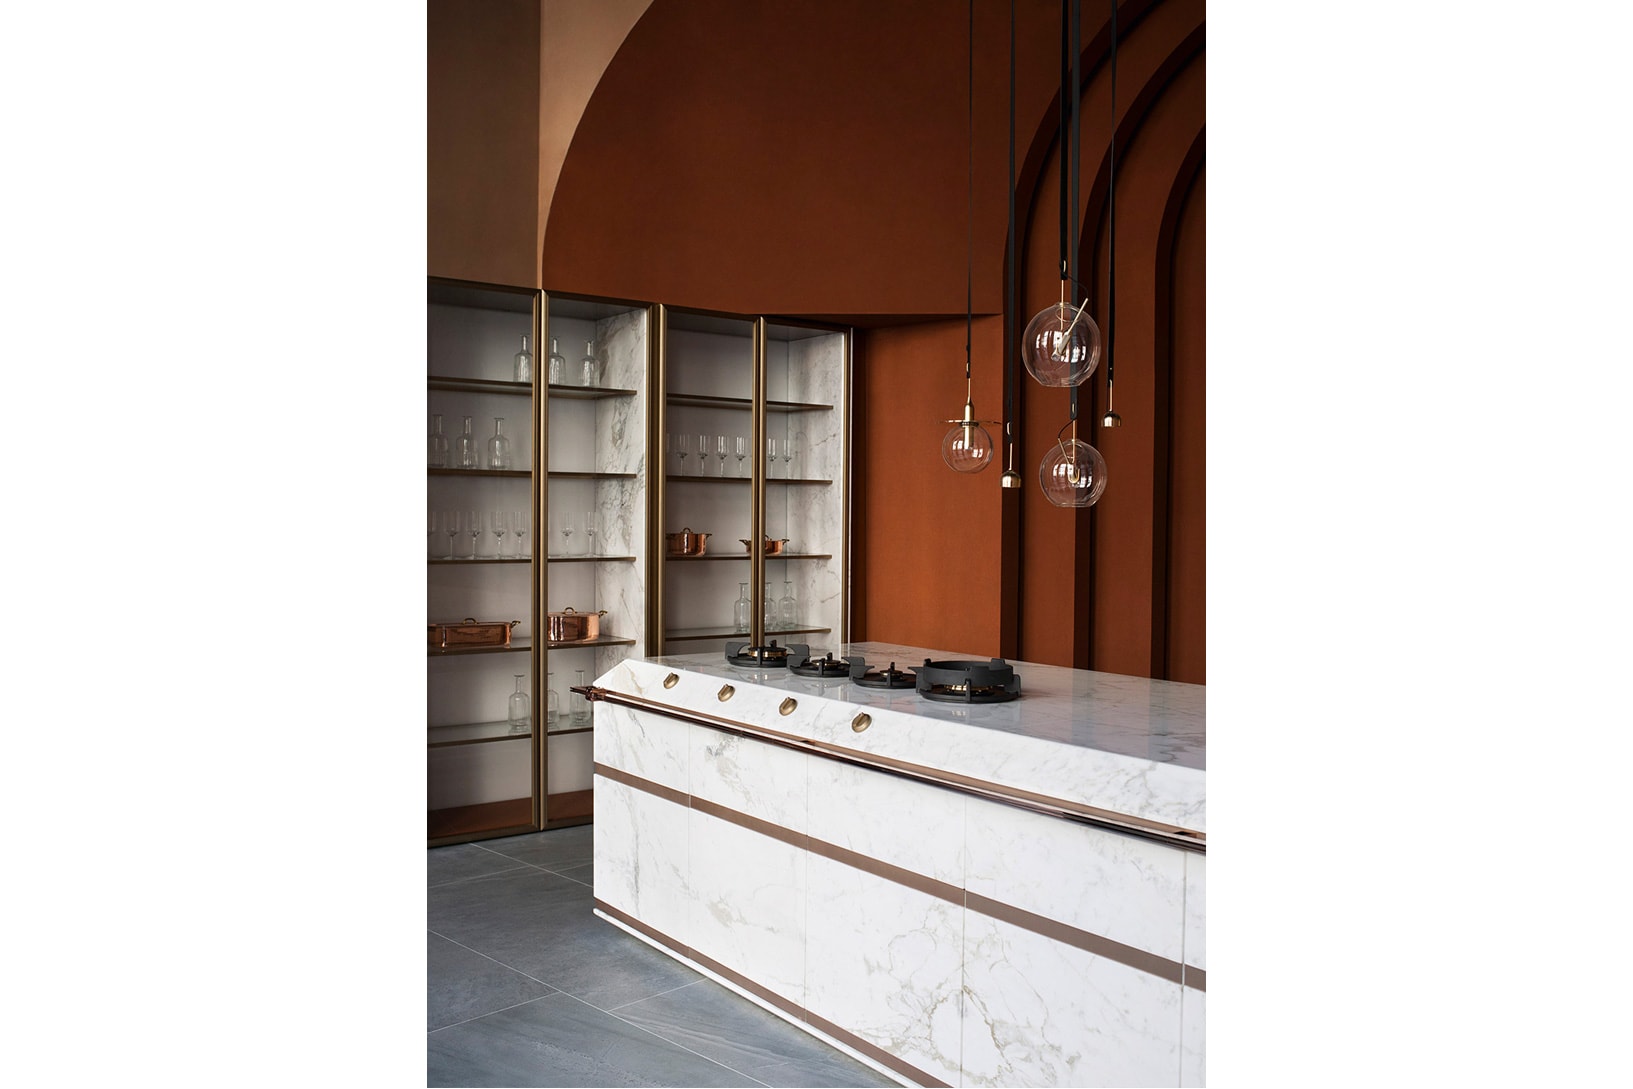 Fendi SCIC Fendi Cucine домашняя кухня Коллекция дизайн интерьера модель цена материалы роскошь